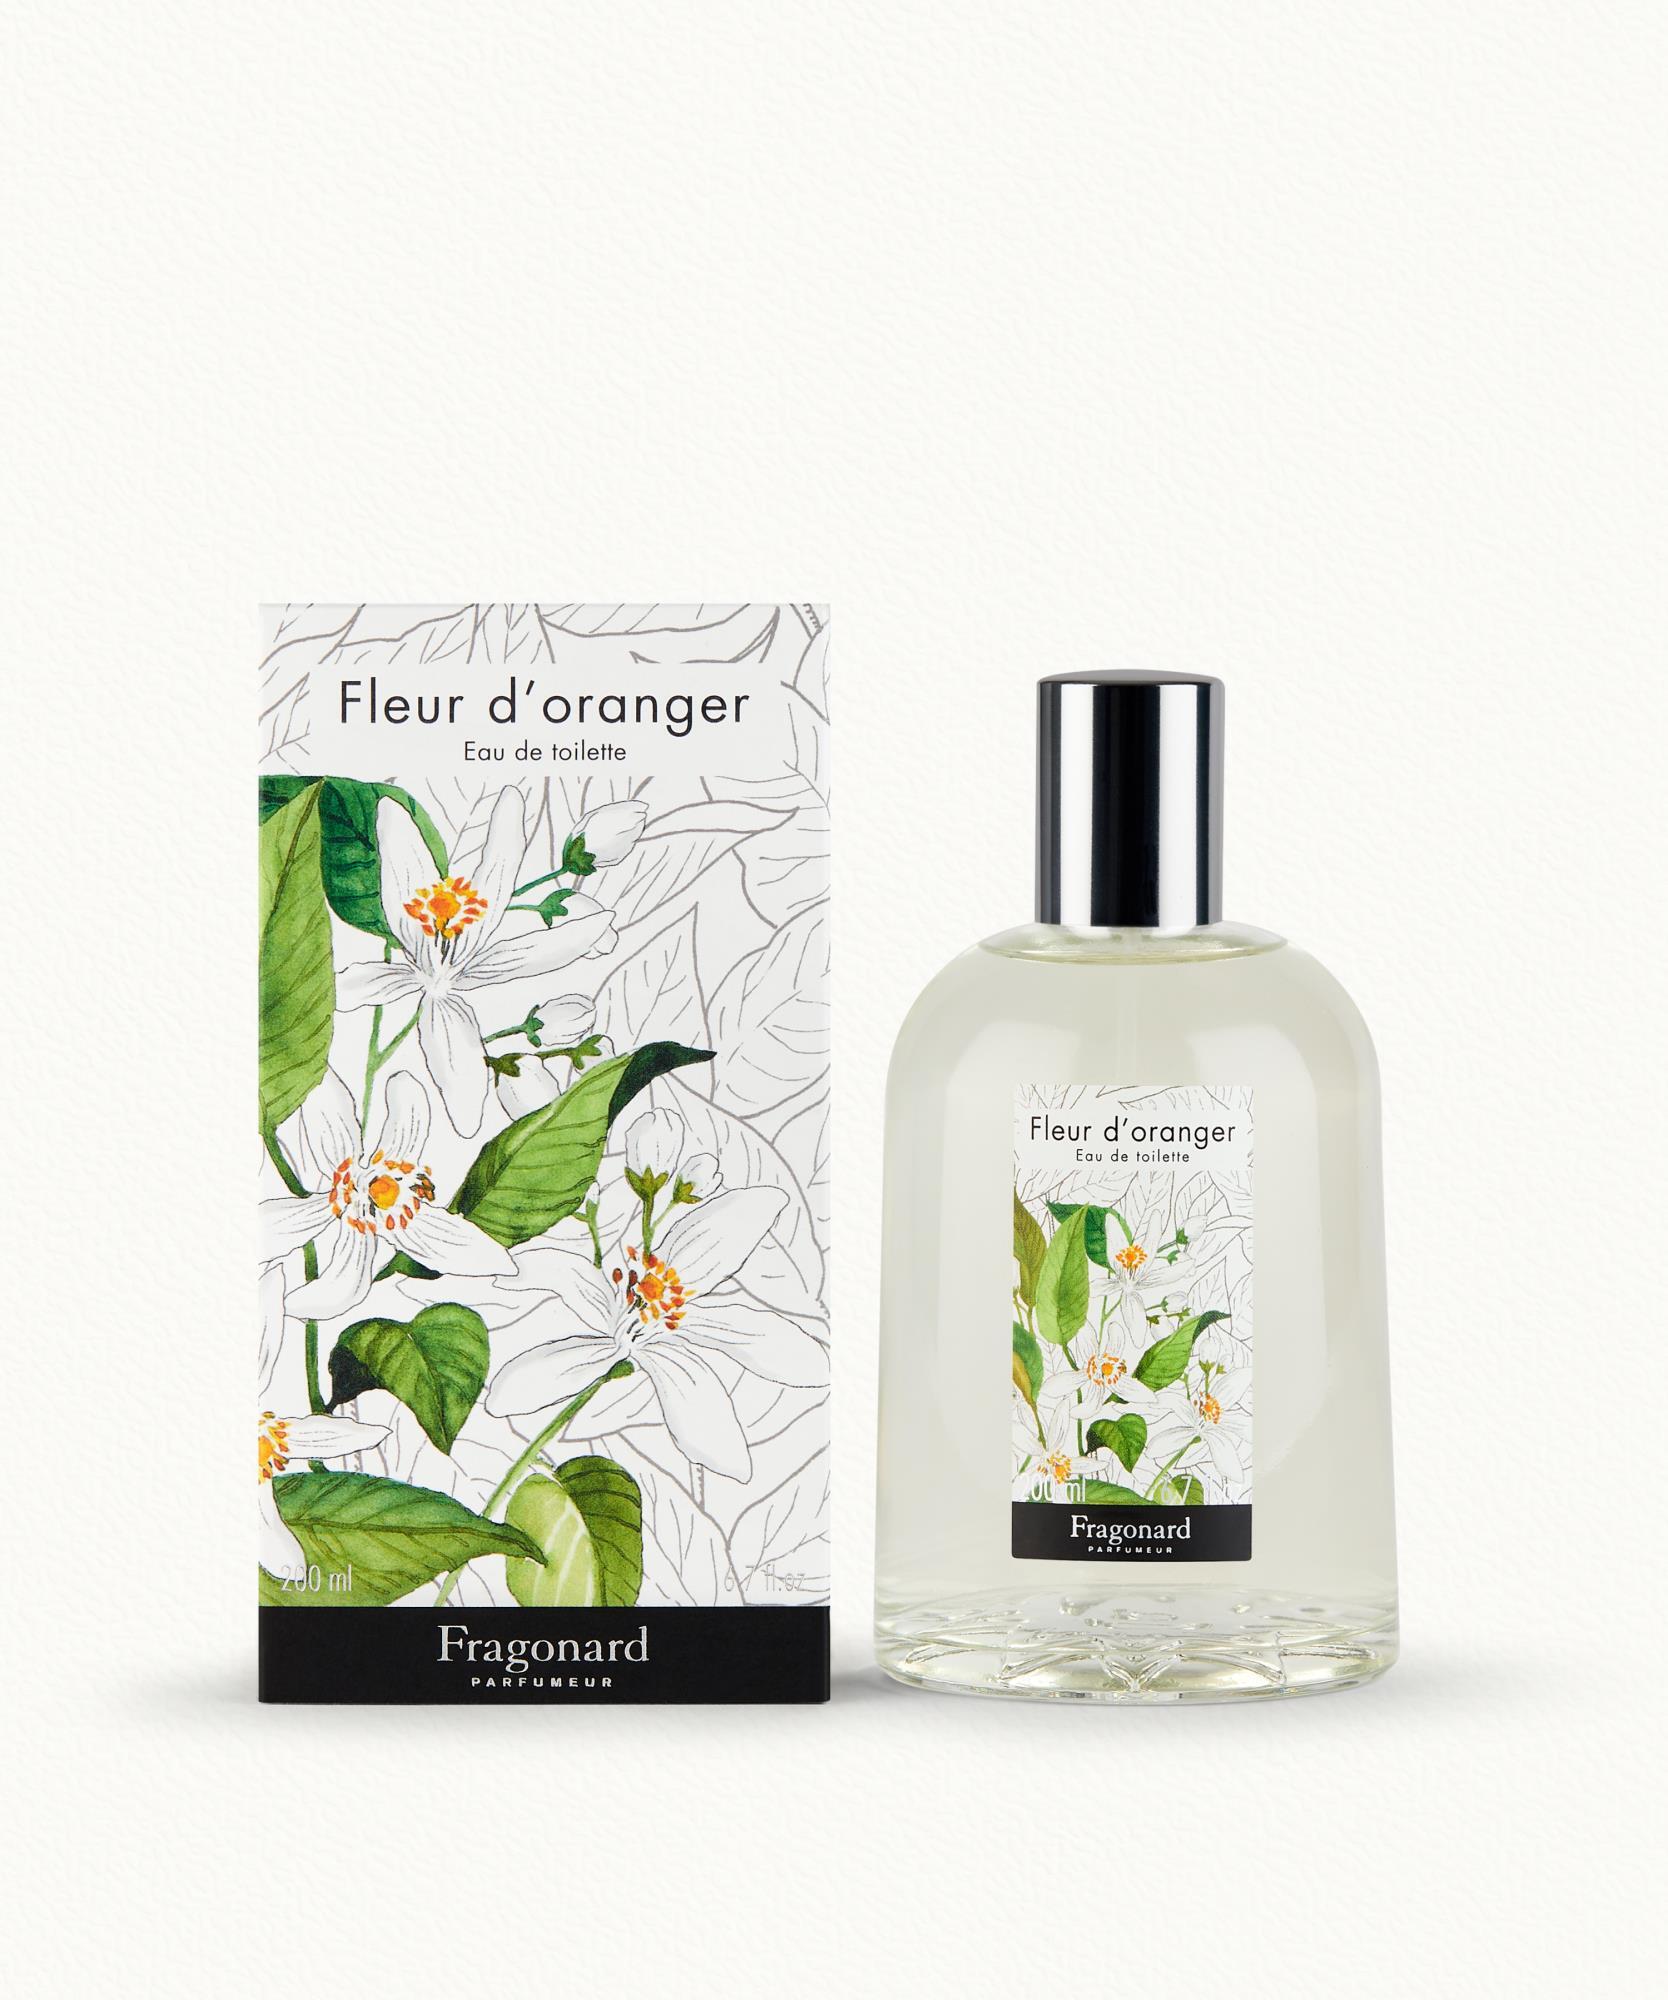 Fleur d'Oranger Eau de toilette 200ml Fragonard - 48,00 €